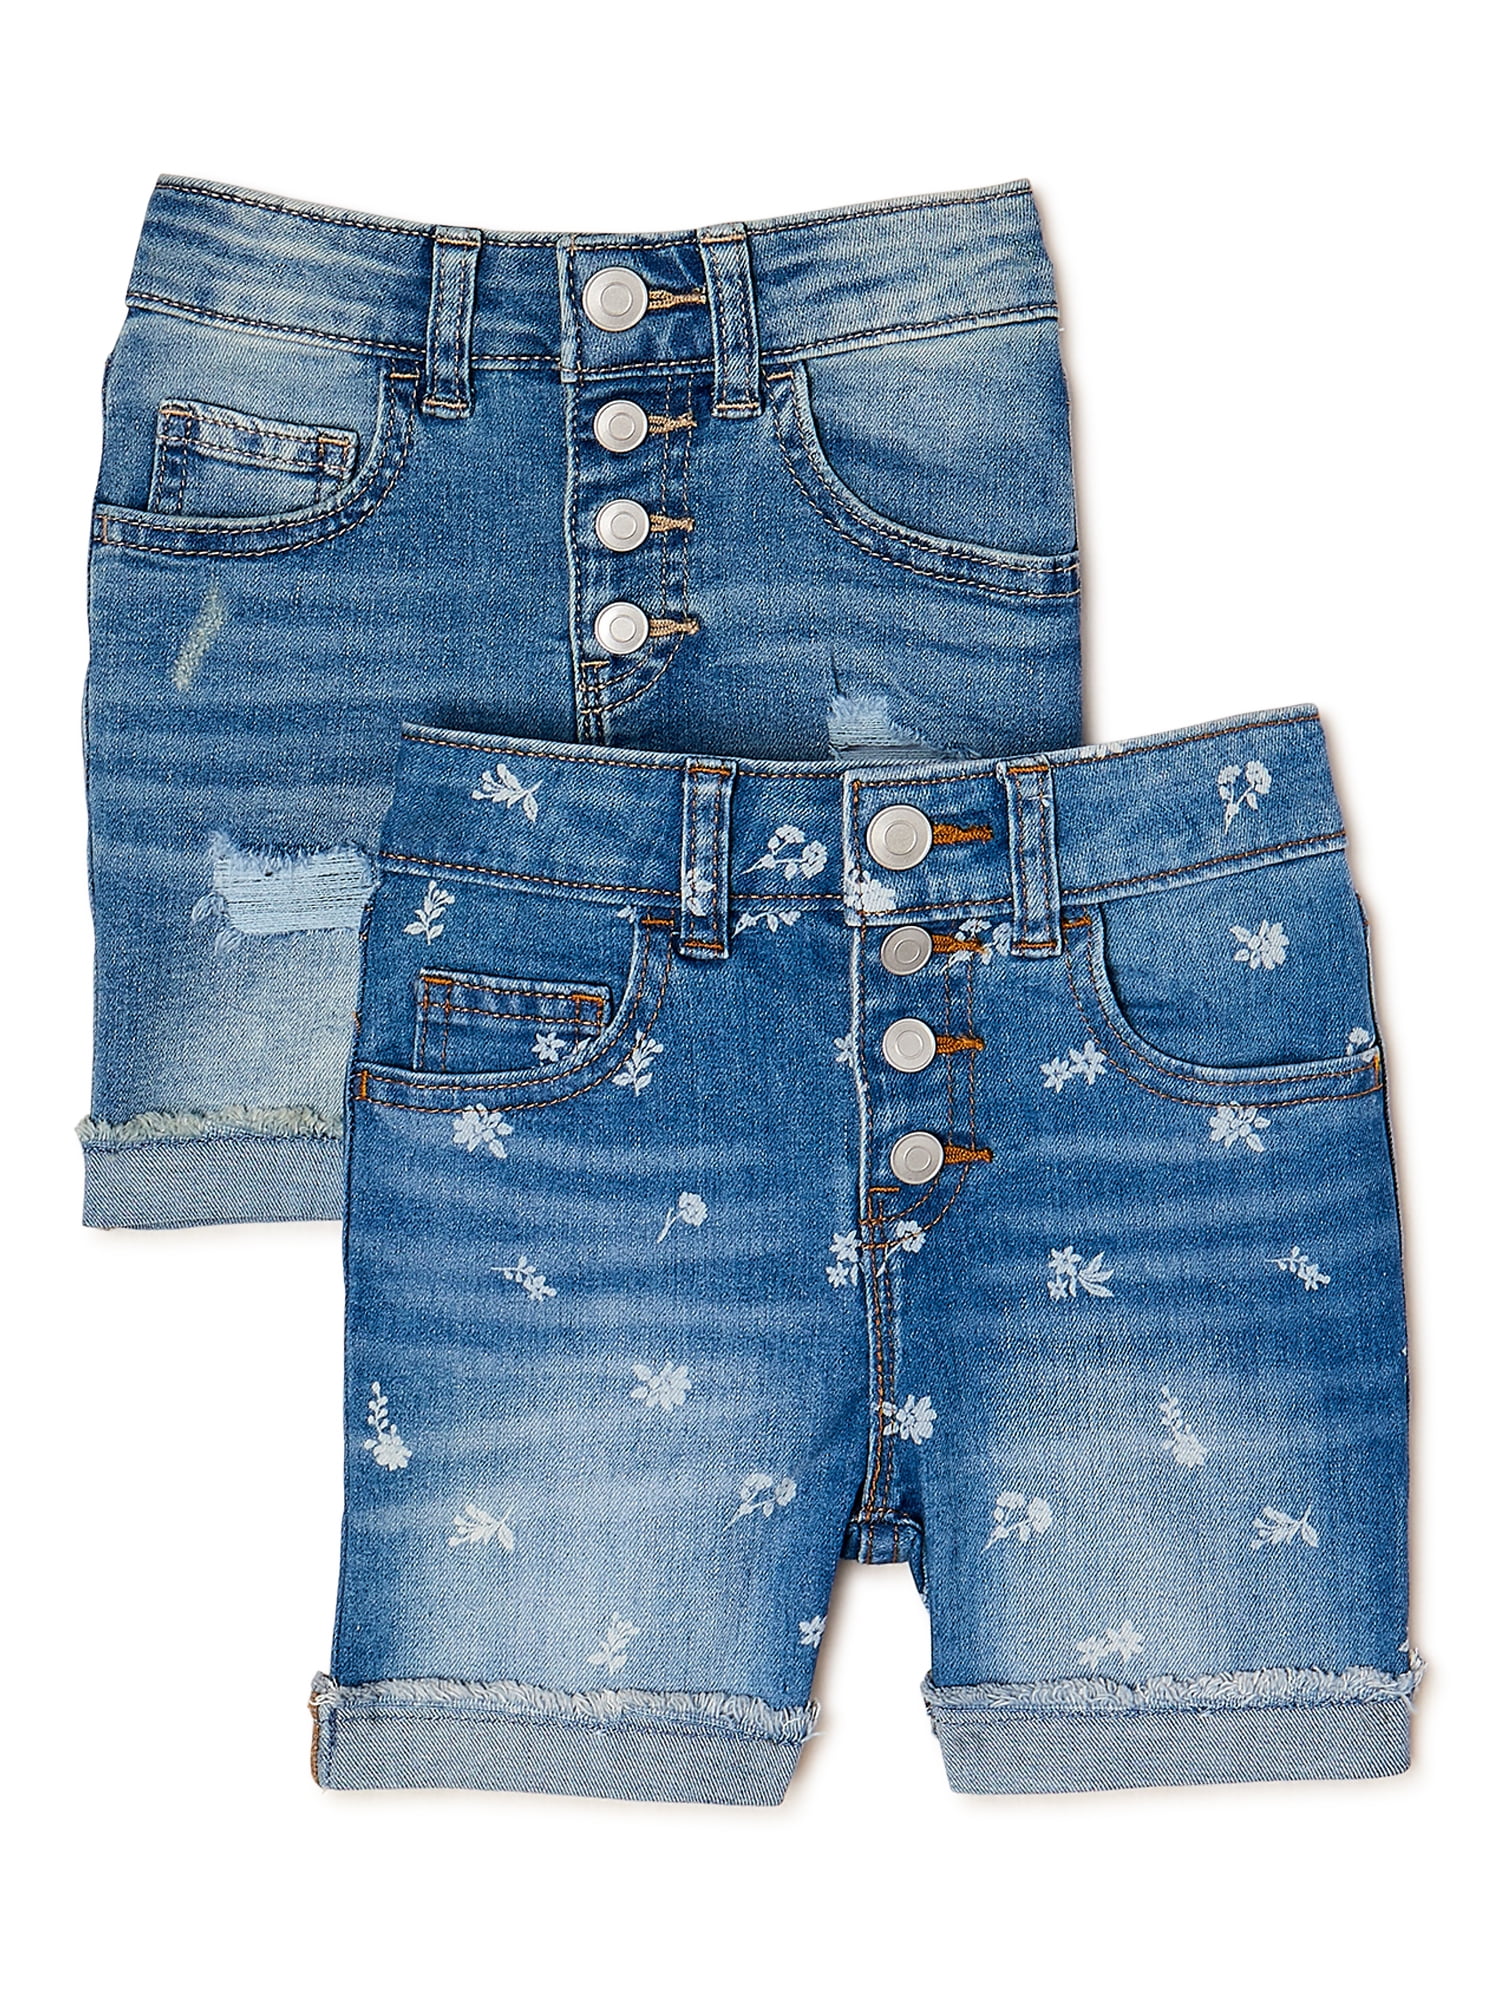 Teenage Sizes 14 to 16 Years Girls Denim Shorts Dark Light Blue Mid Wash Childrens Kids Cotton Short Jeans 